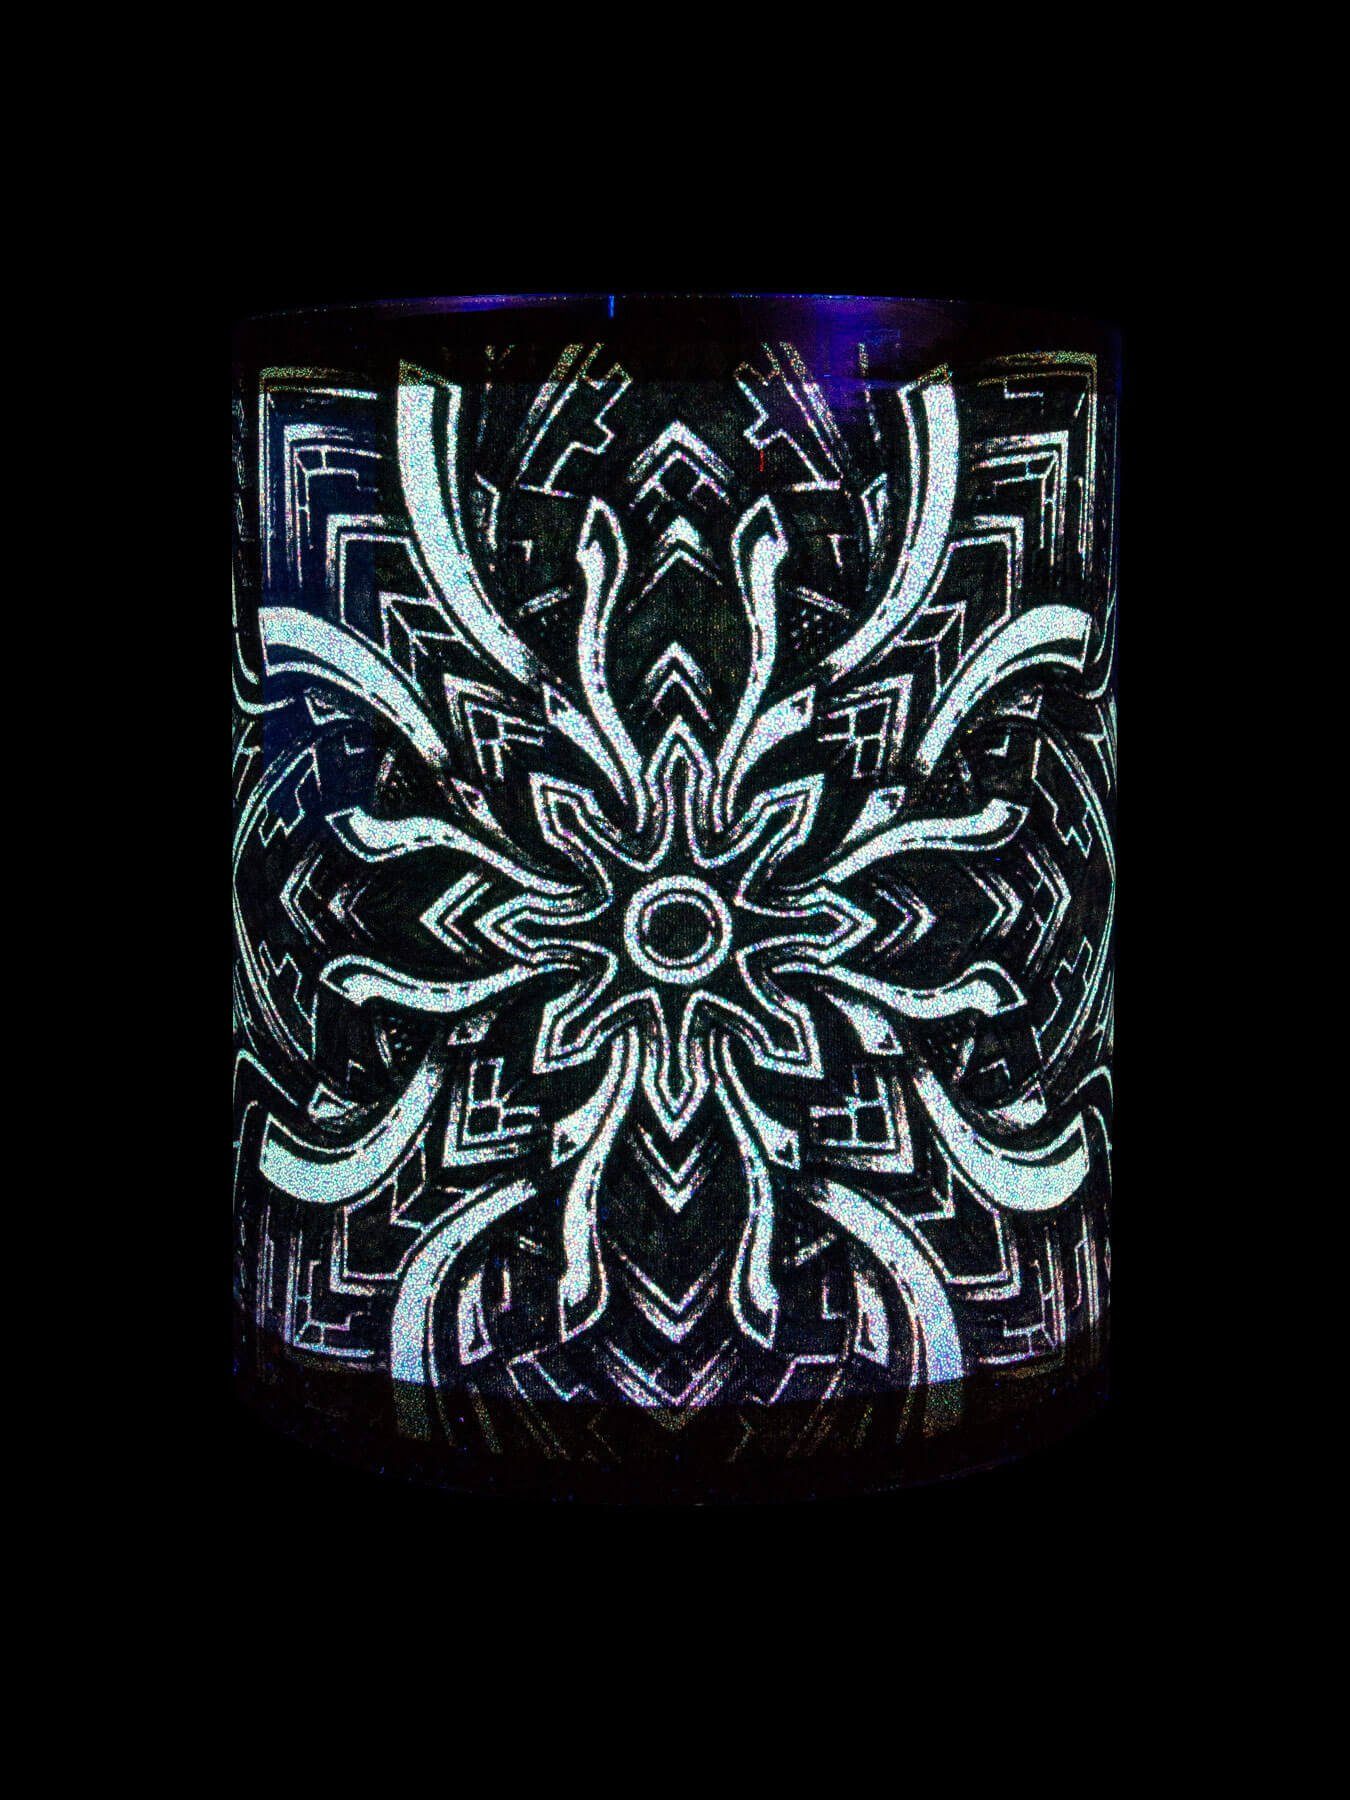 Fluo Portal", Schwarzlicht "Dark UV-aktiv, Tasse Keramik, leuchtet Neon unter Cup Tasse Motiv PSYWORK